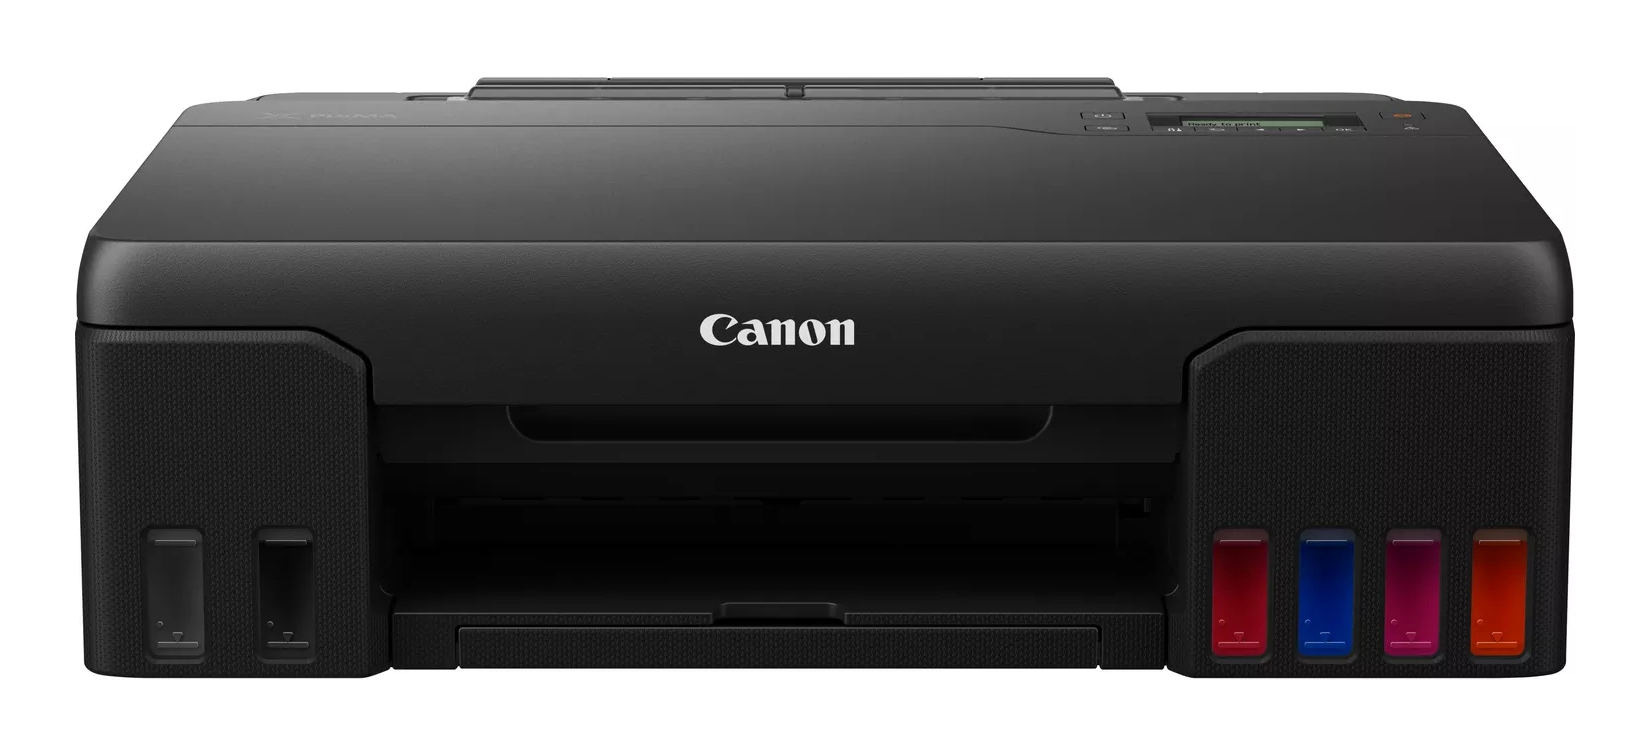 Canon PIXMA G550 MegaTank inkjet printer